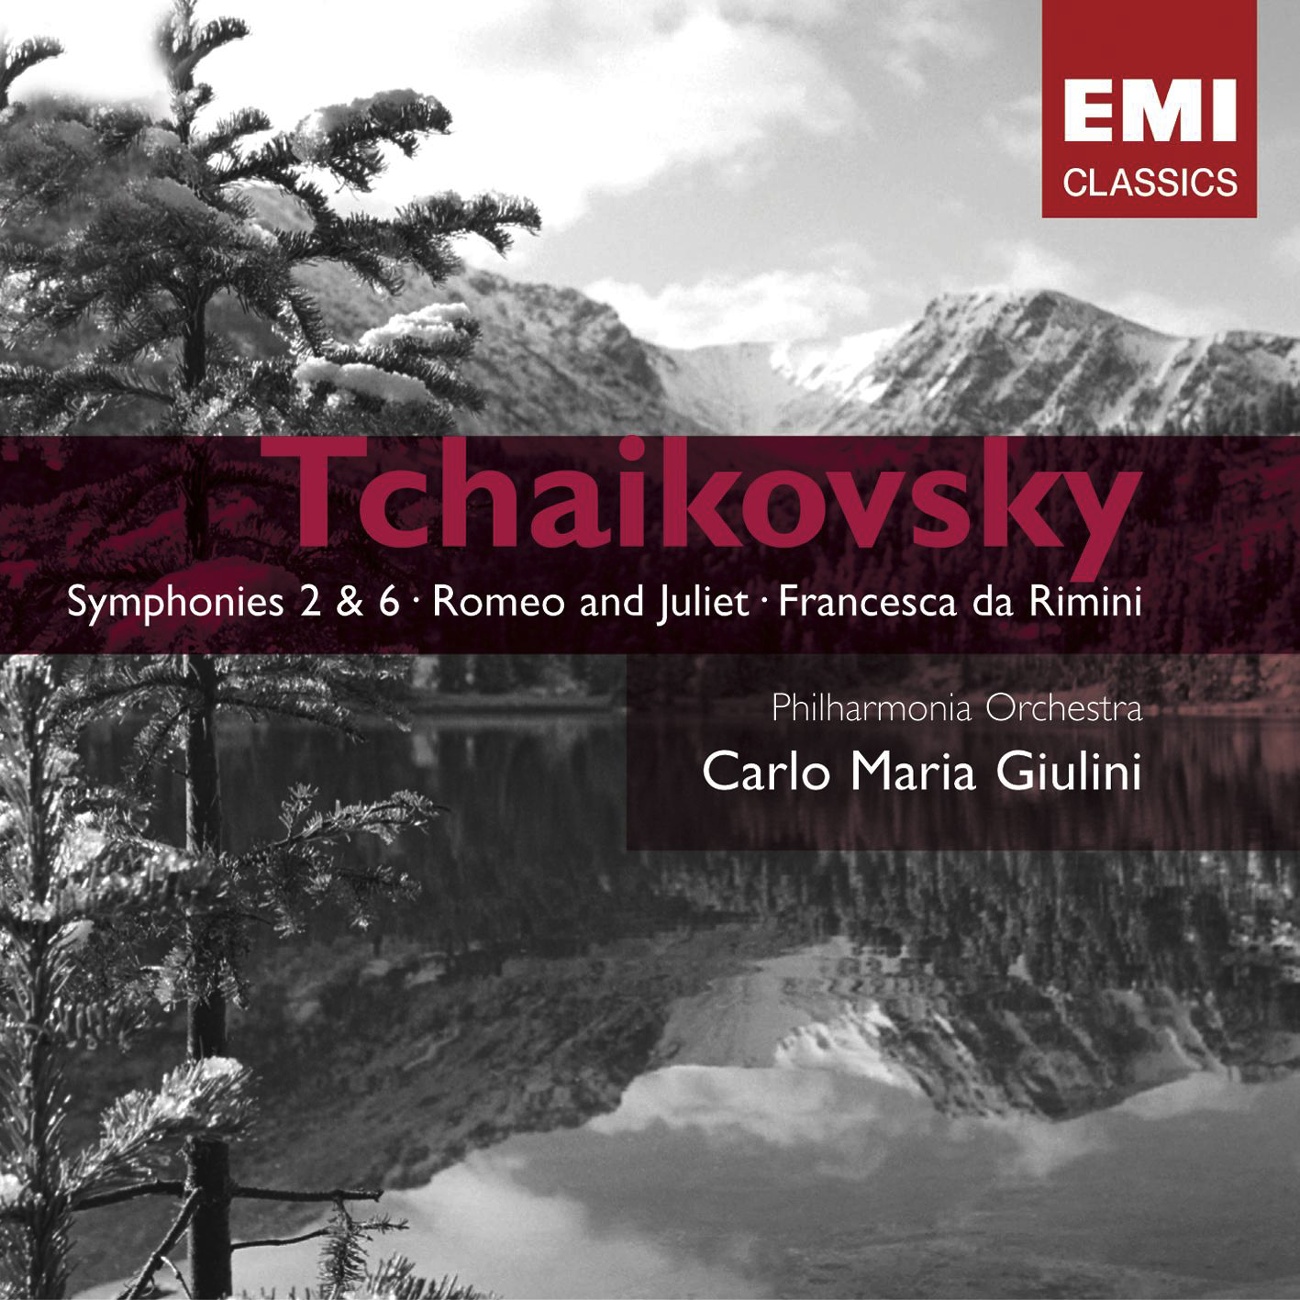 Symphony No. 2 in C minor, Op. 17 ("Little Russian") (2005 Digital Remaster): III. Scherzo (Allegro molto vivace - L'istesso tempo)